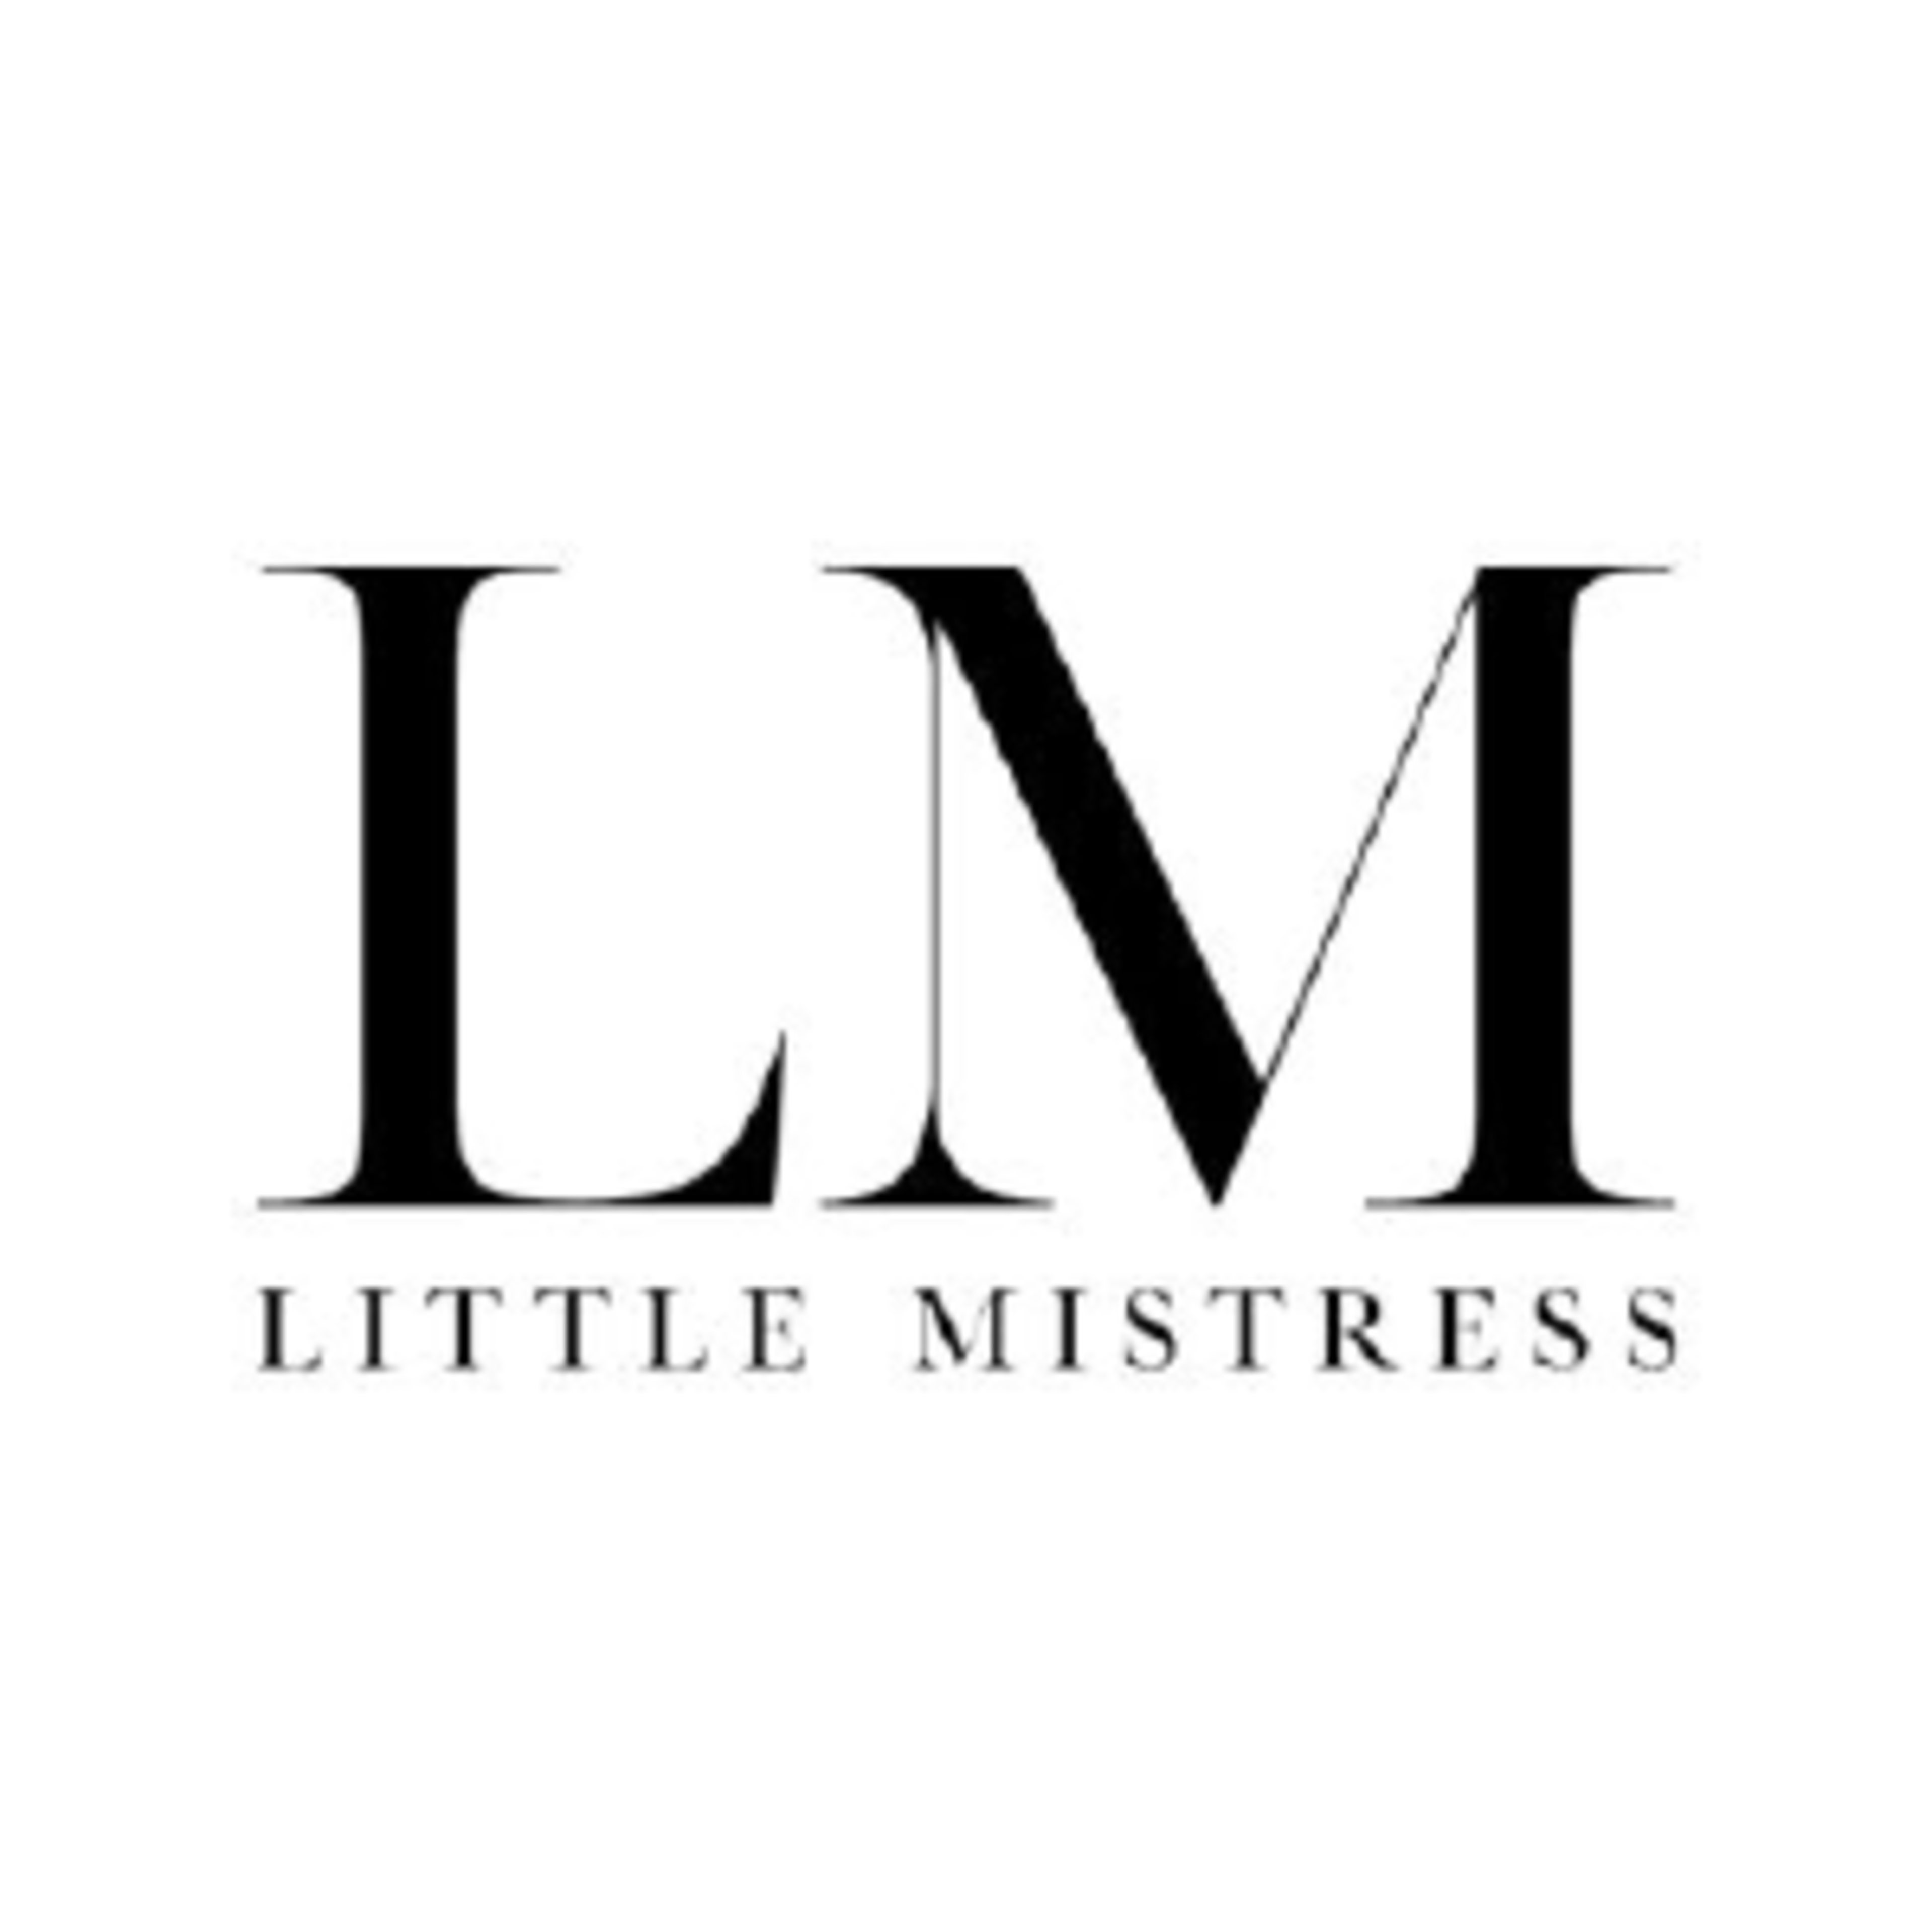 Little MistressCode